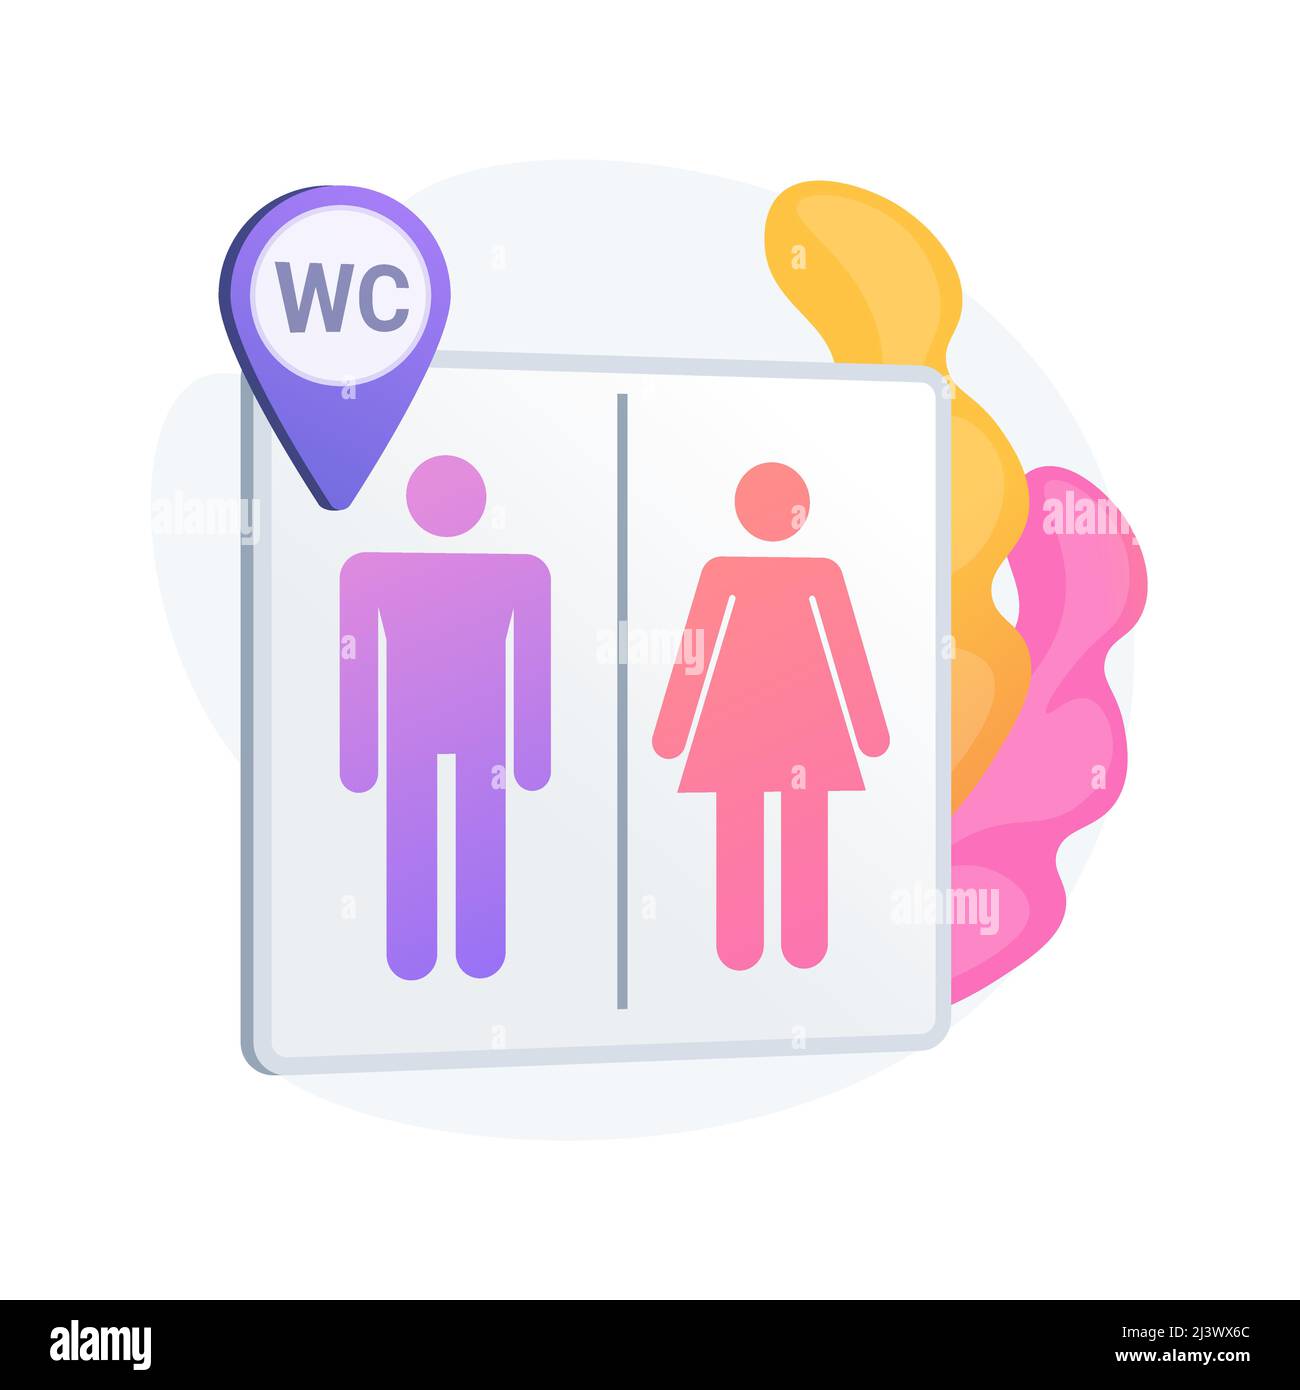 Toilettes publiques. Panneau de toilettes, toilettes pour hommes et femmes, symbole WC et géotag. Silhouettes de gentilhomme et de dame sur panneau de signalisation de toilettes. Vecteur Illustration de Vecteur